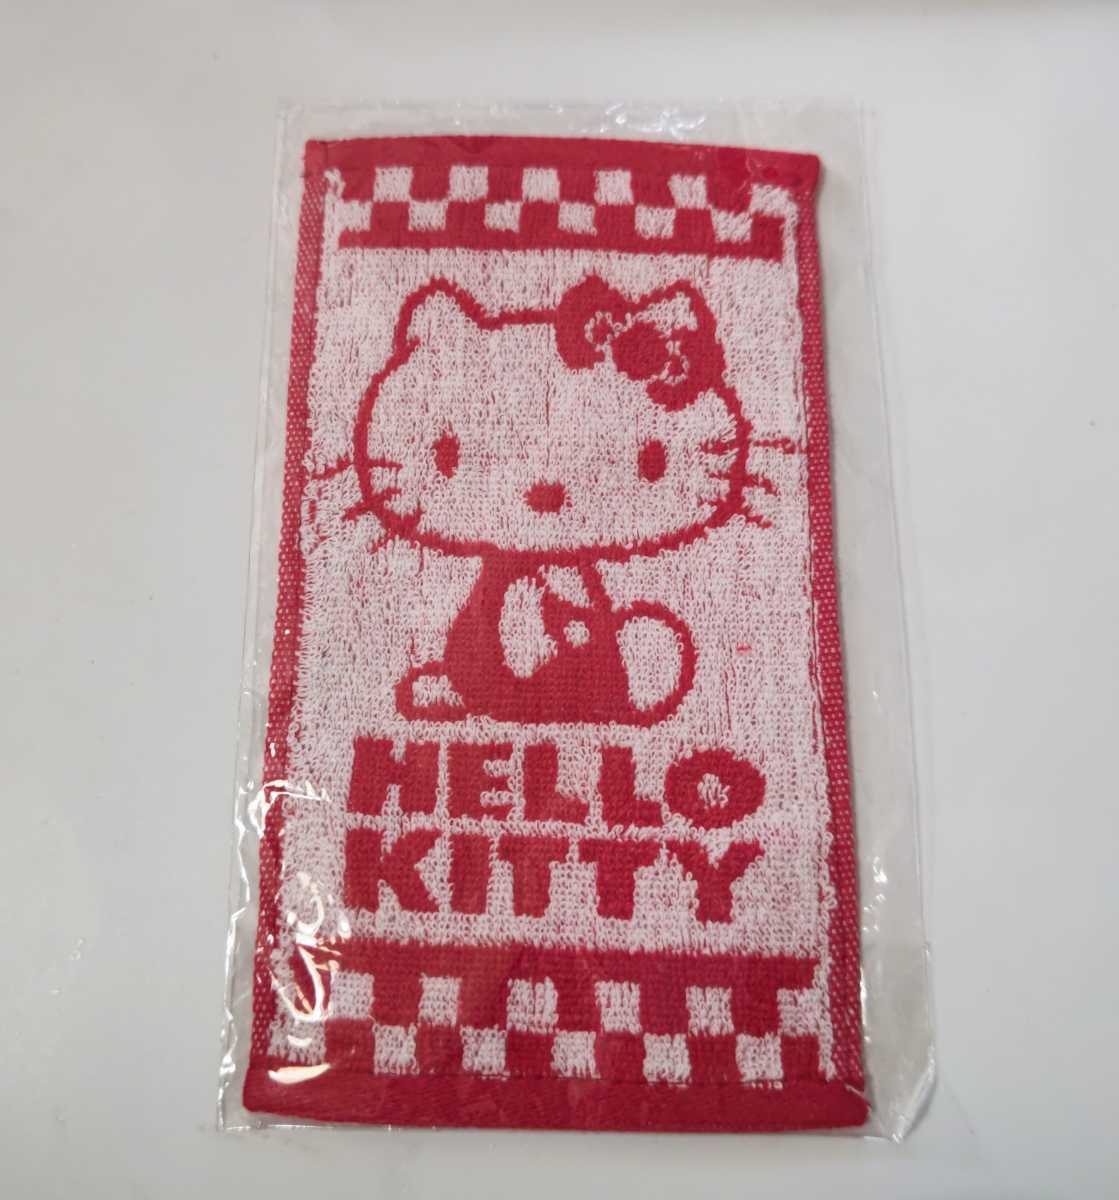 サンリオ いちご新聞 付録 キティ Hello Kitty★プチスポーツタオル 未開封・新品の画像1